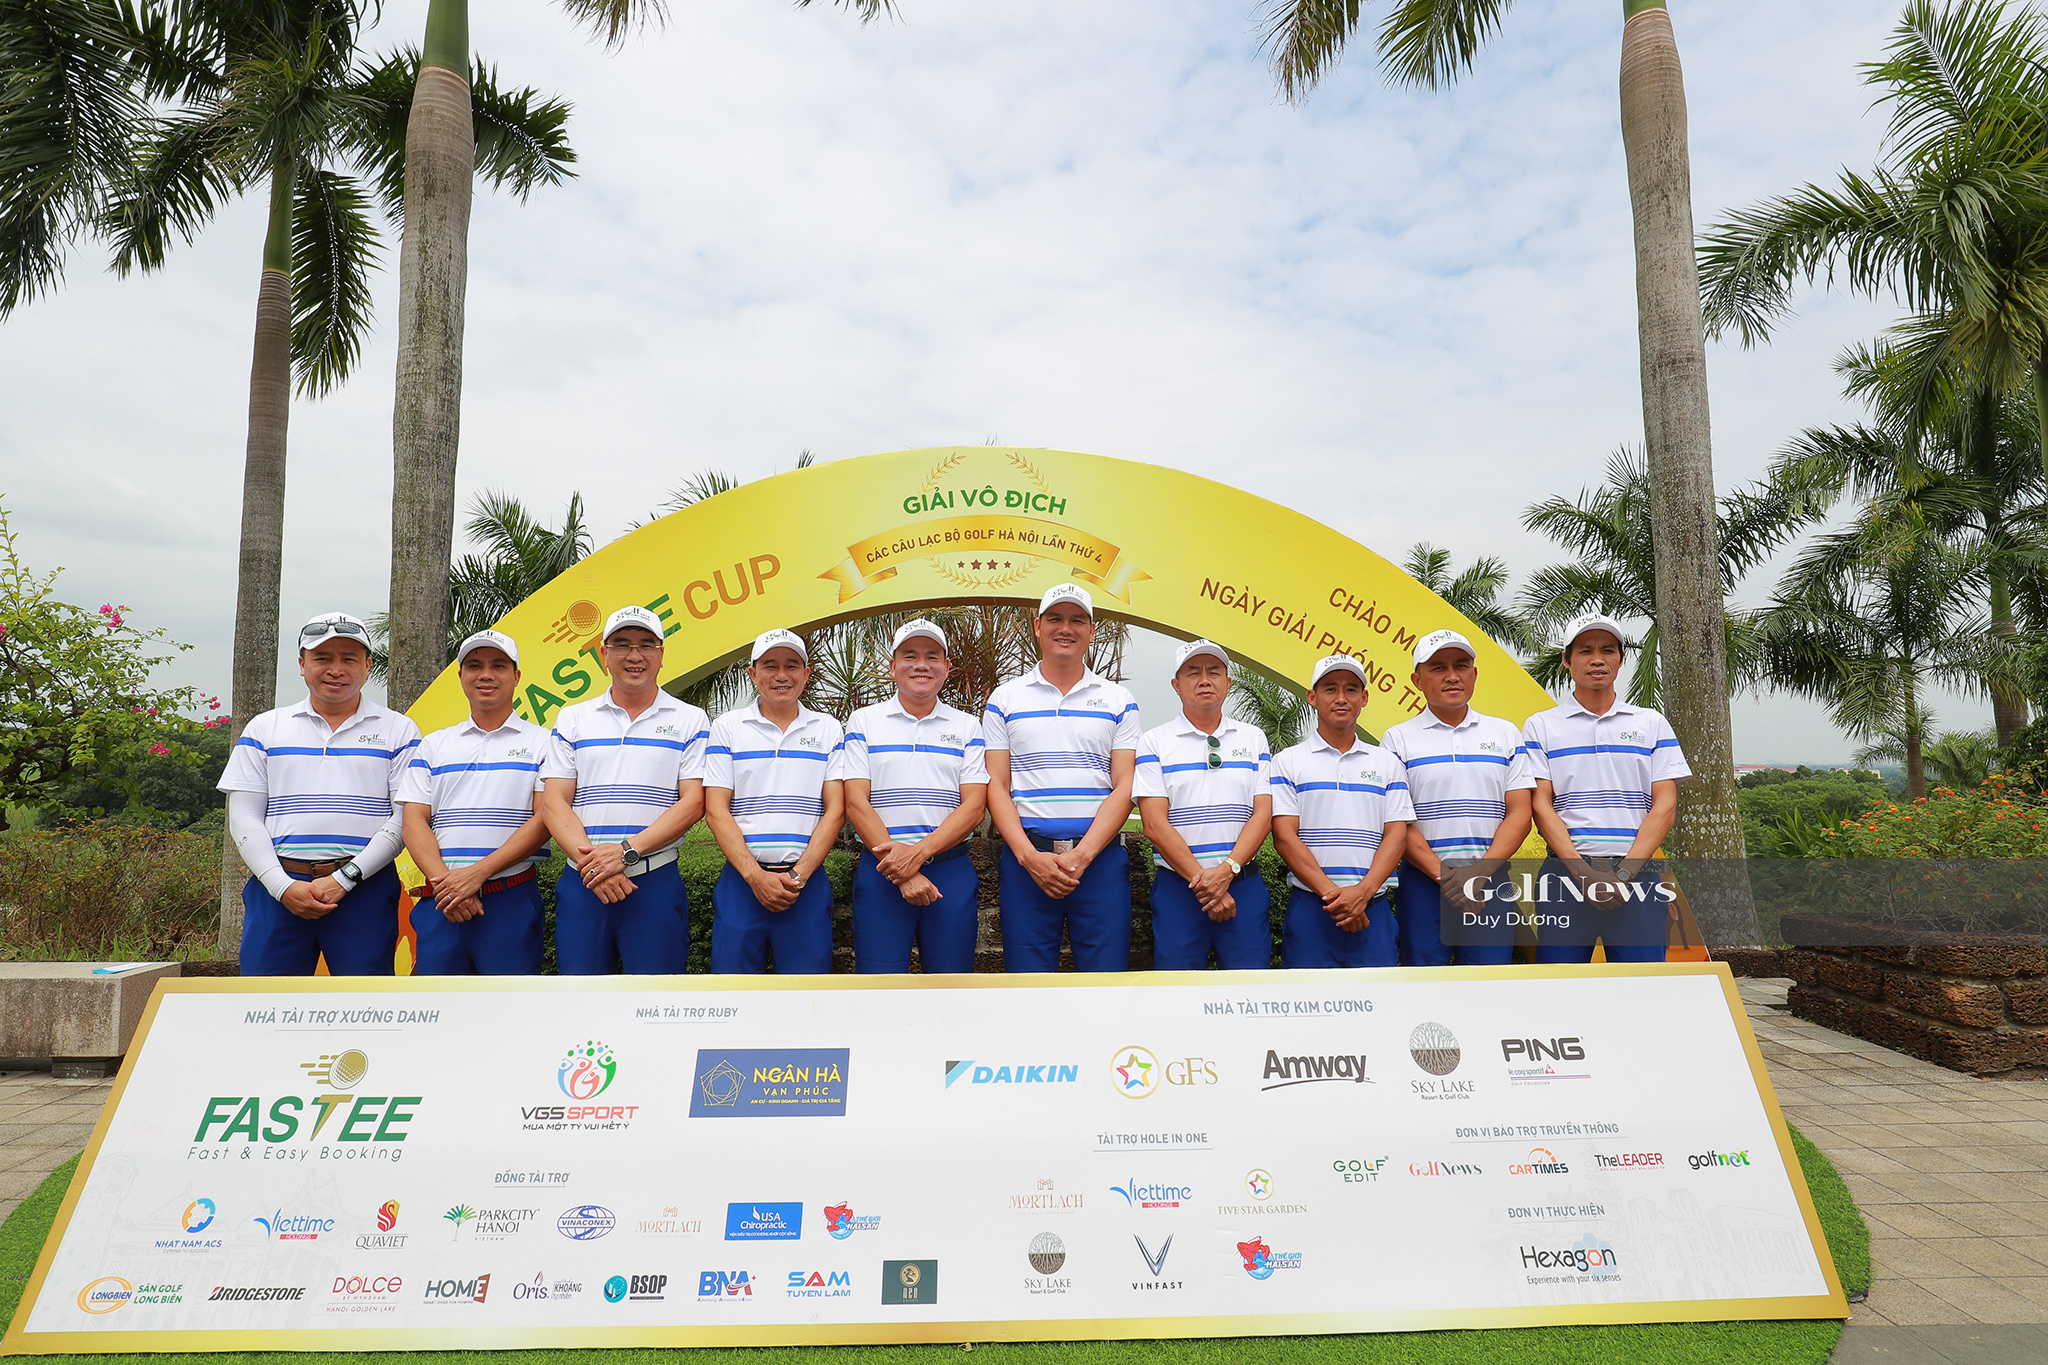 Chung kết giải Vô địch các CLB Golf Hà Nội lần 4: CLB Golf Việt Hưng và G81 tạm dẫn đầu.